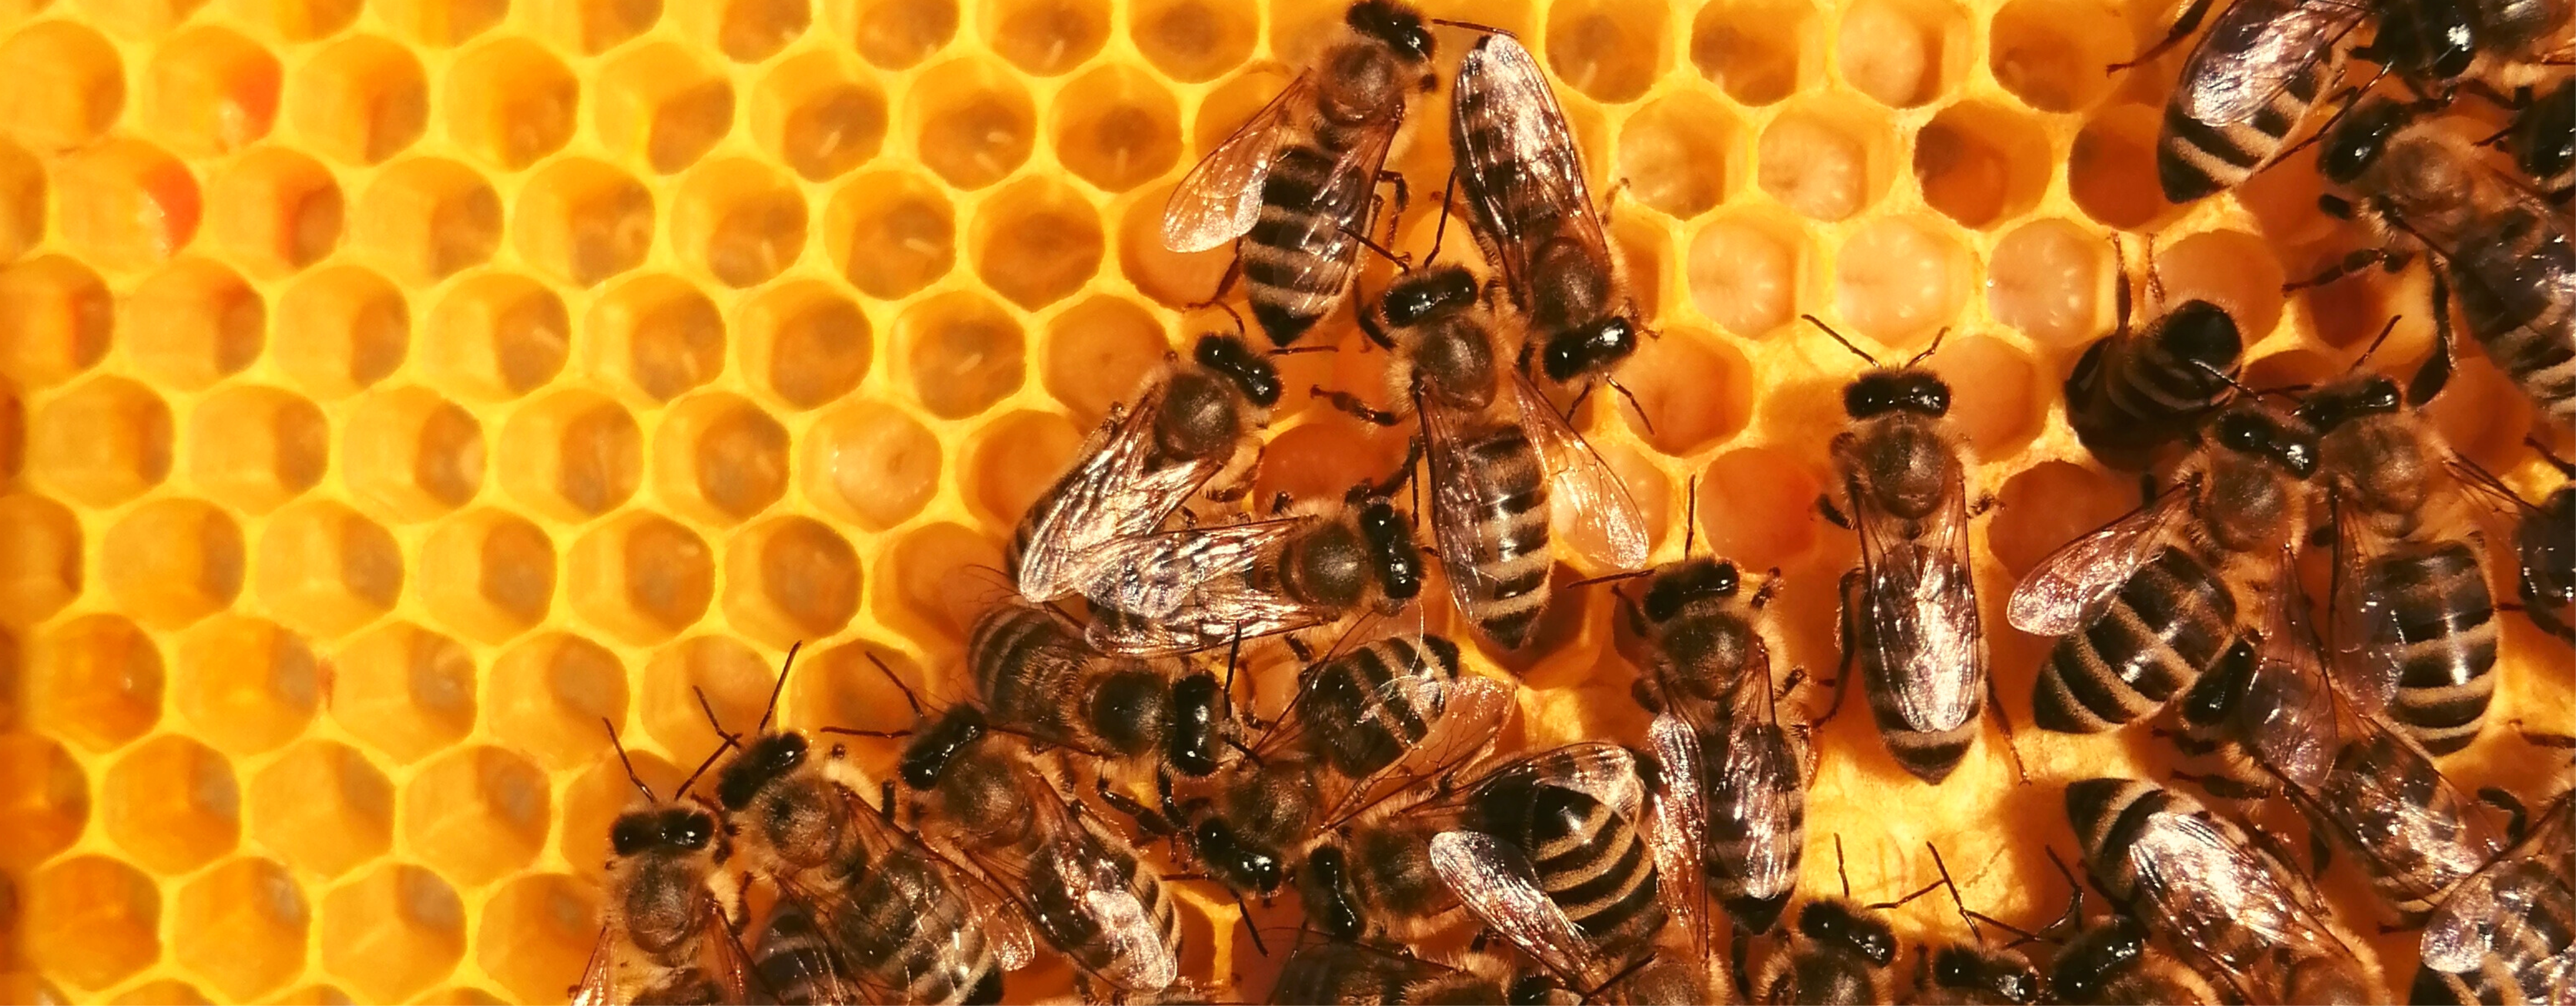 Nektárium manufaktúra mézei a Varázsvölgy Shopban